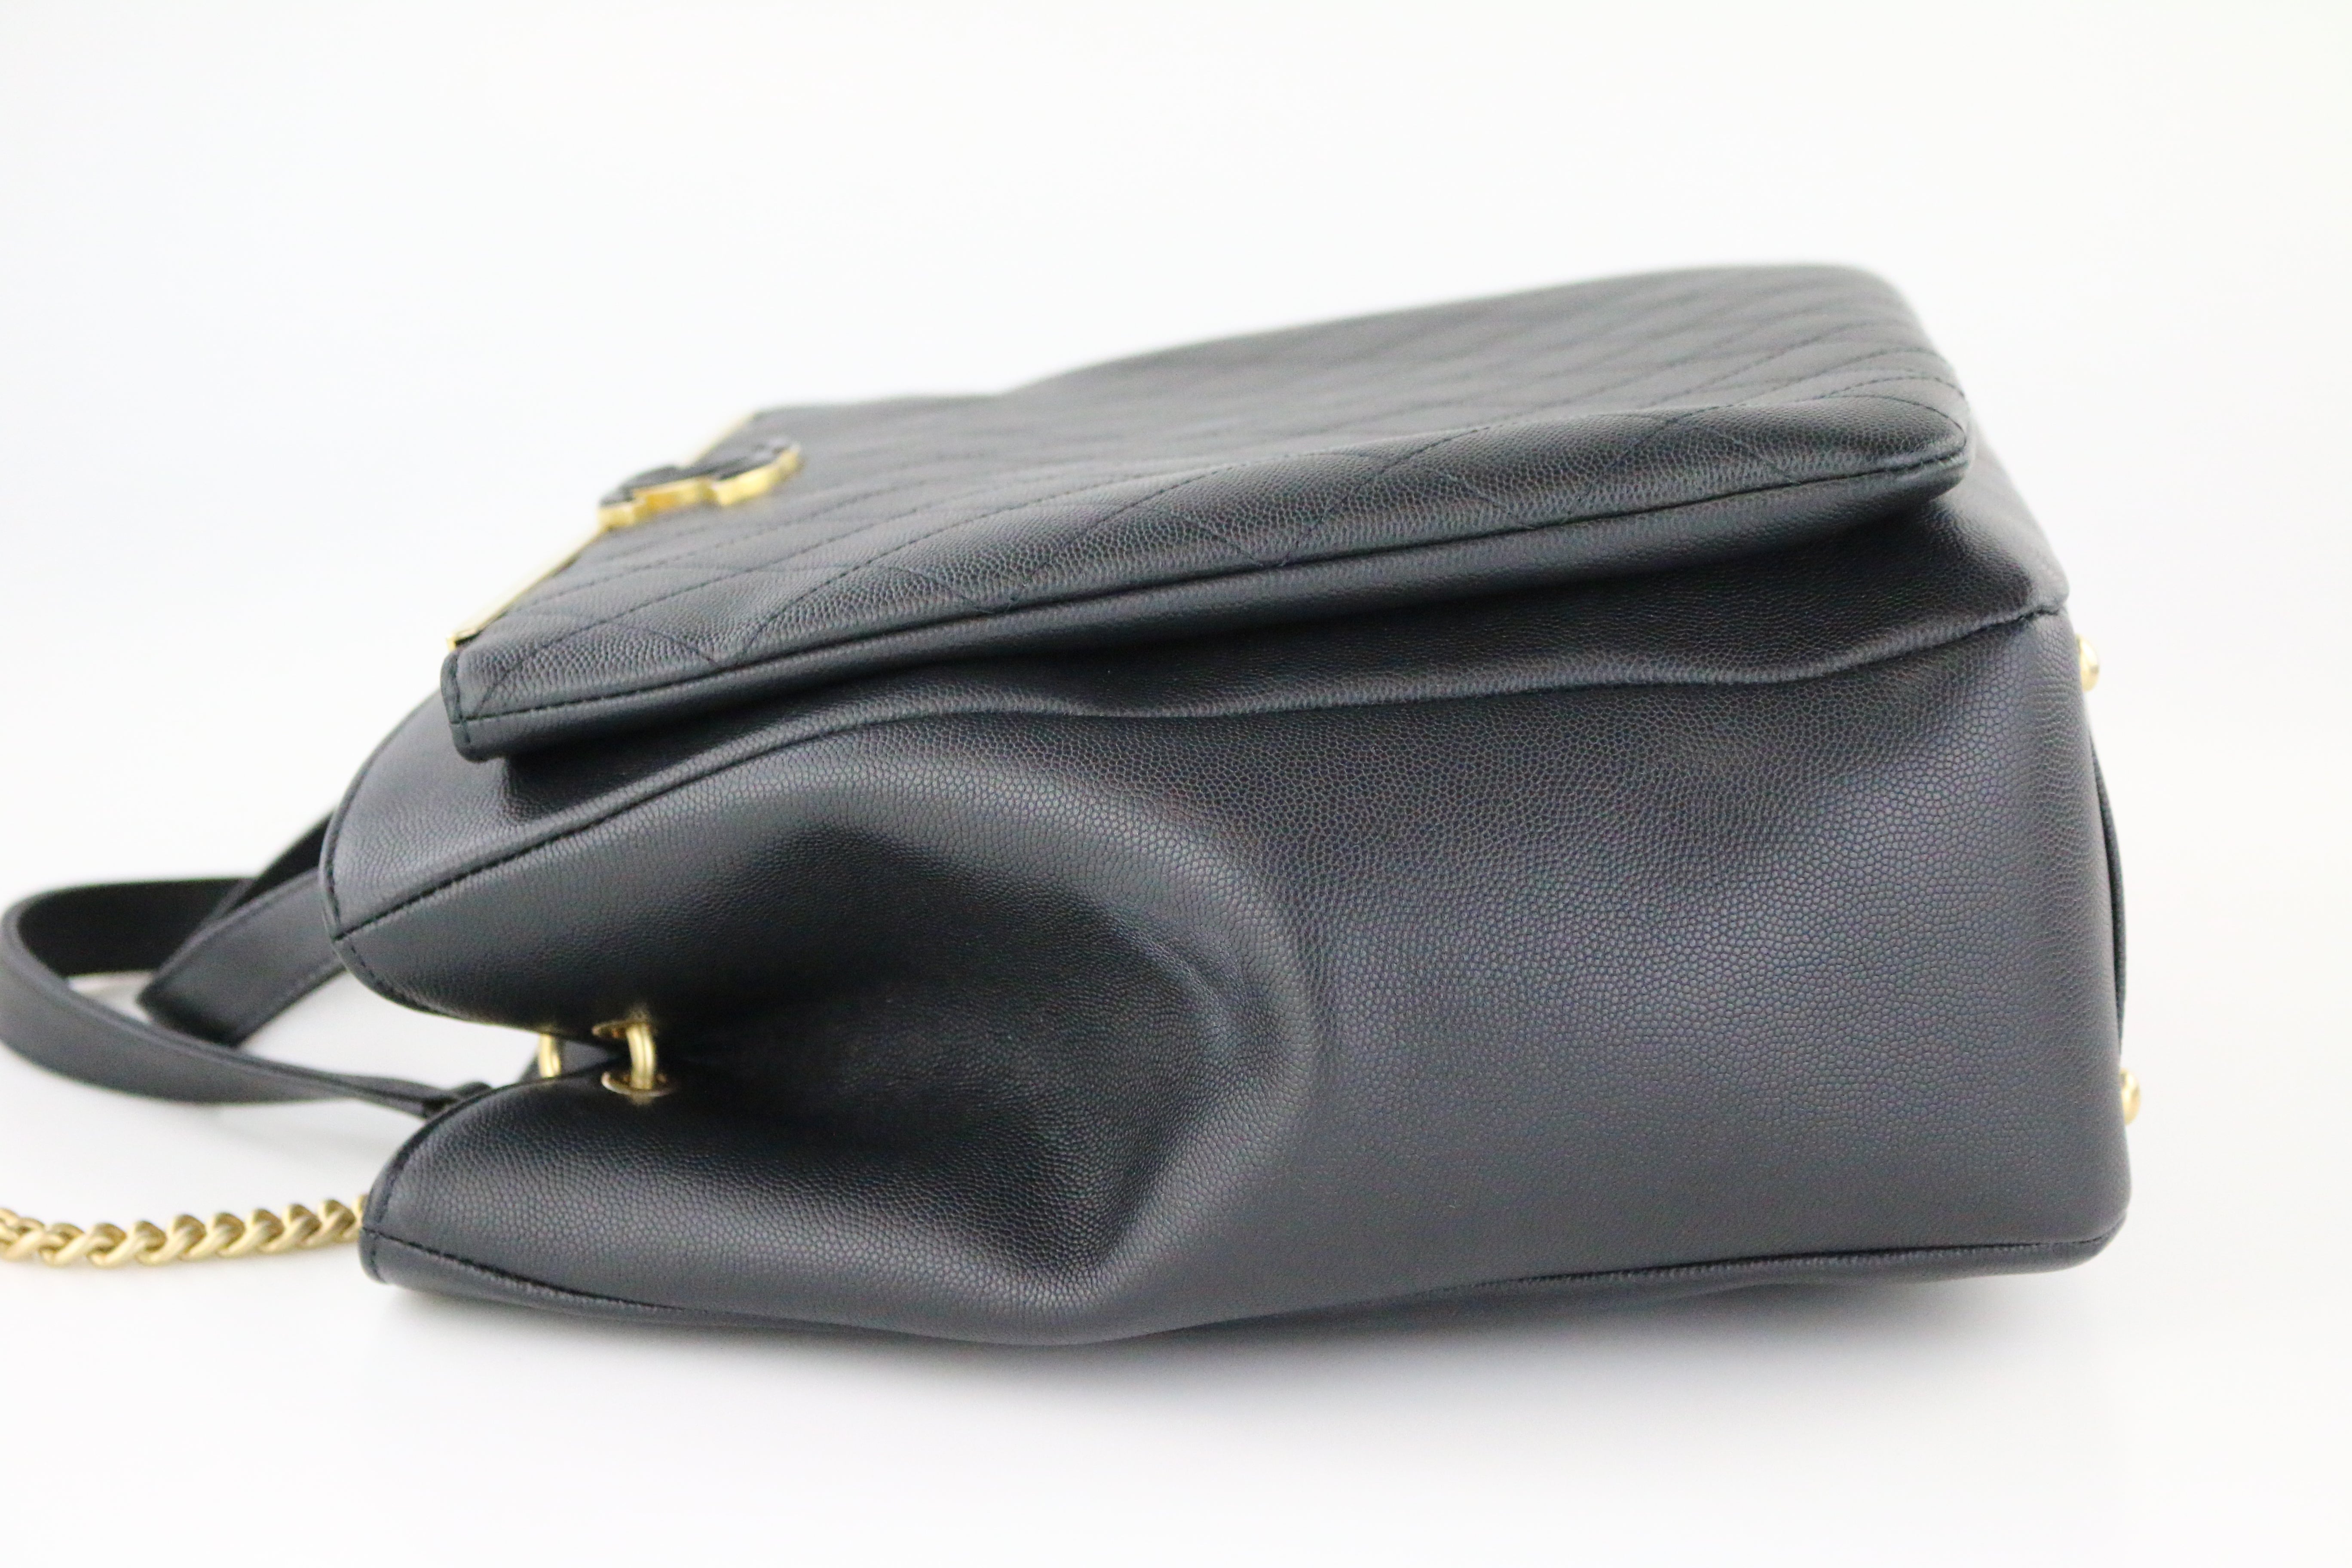 Vintage CHANEL black calfskin shoulder bag, tote bag with golden